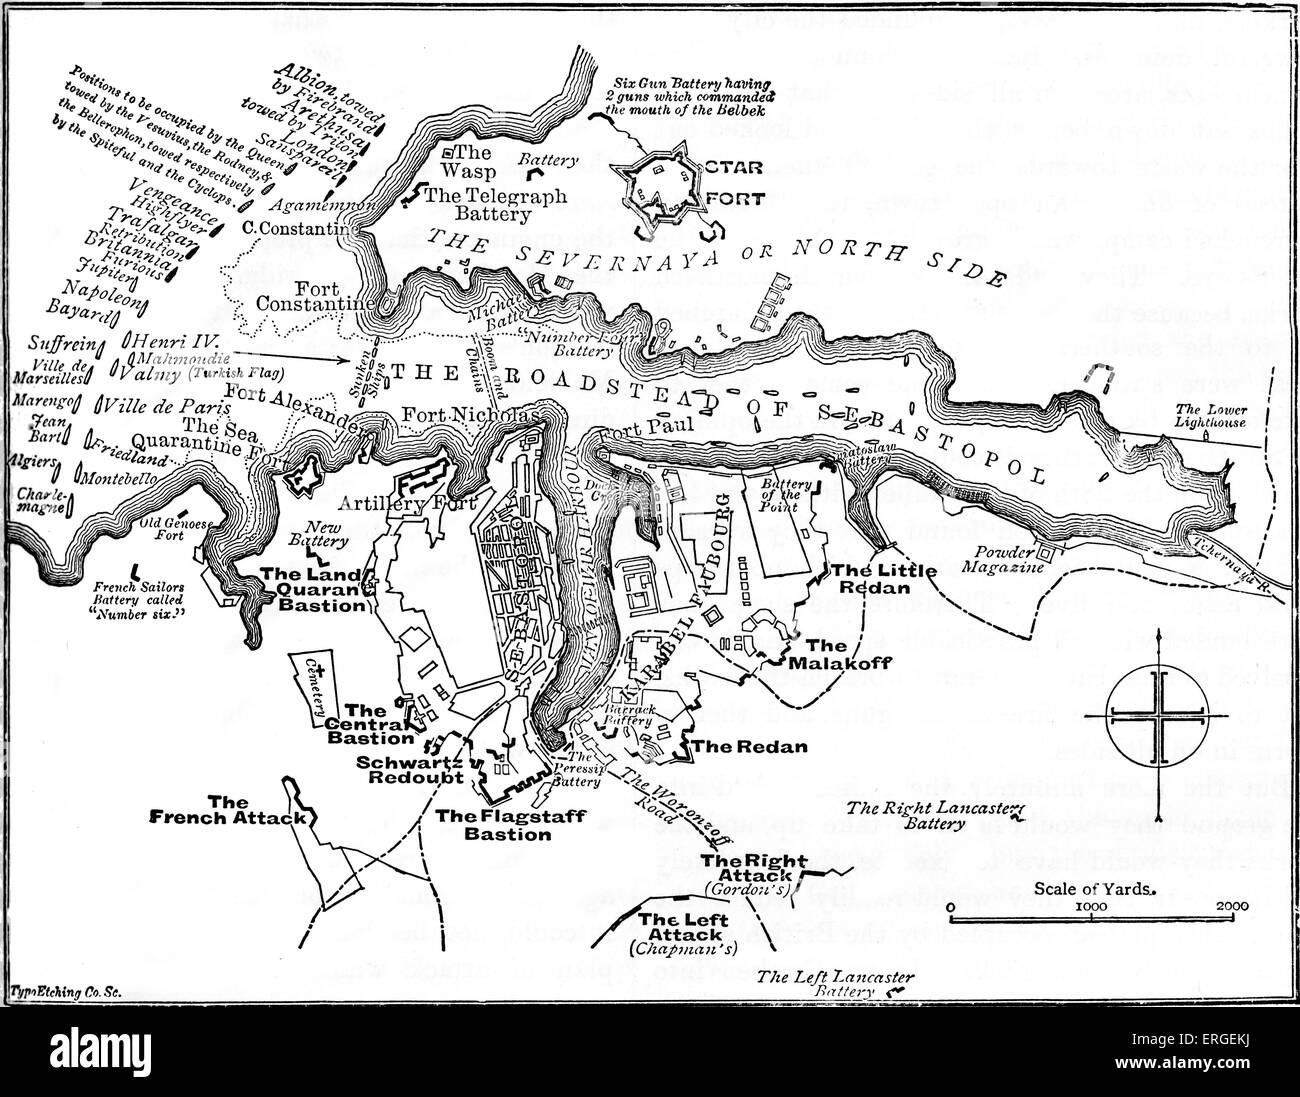 Belagerung von Sewastopol - Karte der britischen Verteidigung. Belagerung während Krimkrieg, dauert von September 1854 bis September 1855. Stockfoto